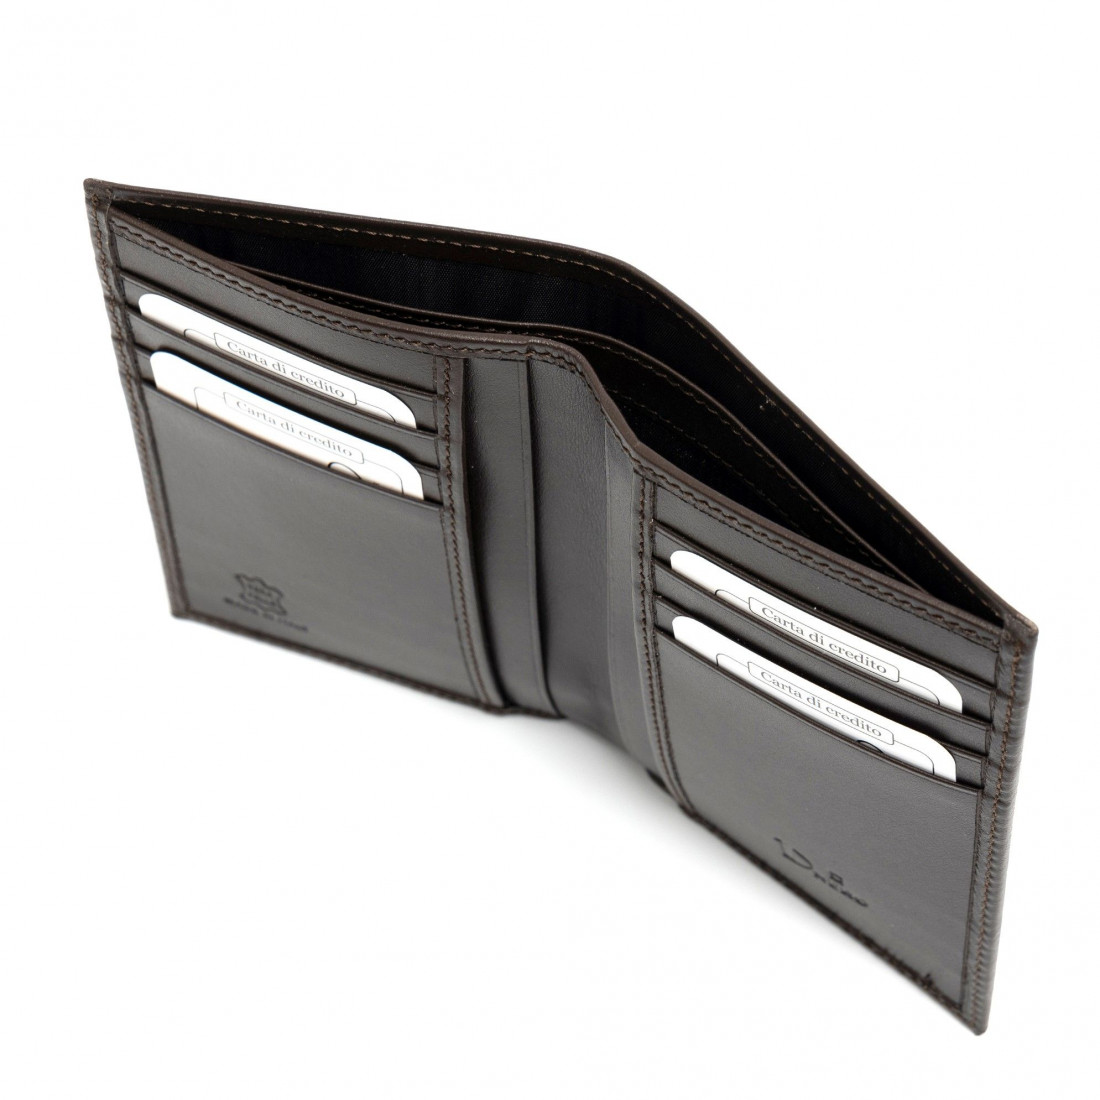 Vertikal faltbare Brieftasche Dnero aus weichem dunkelbraunem Leder